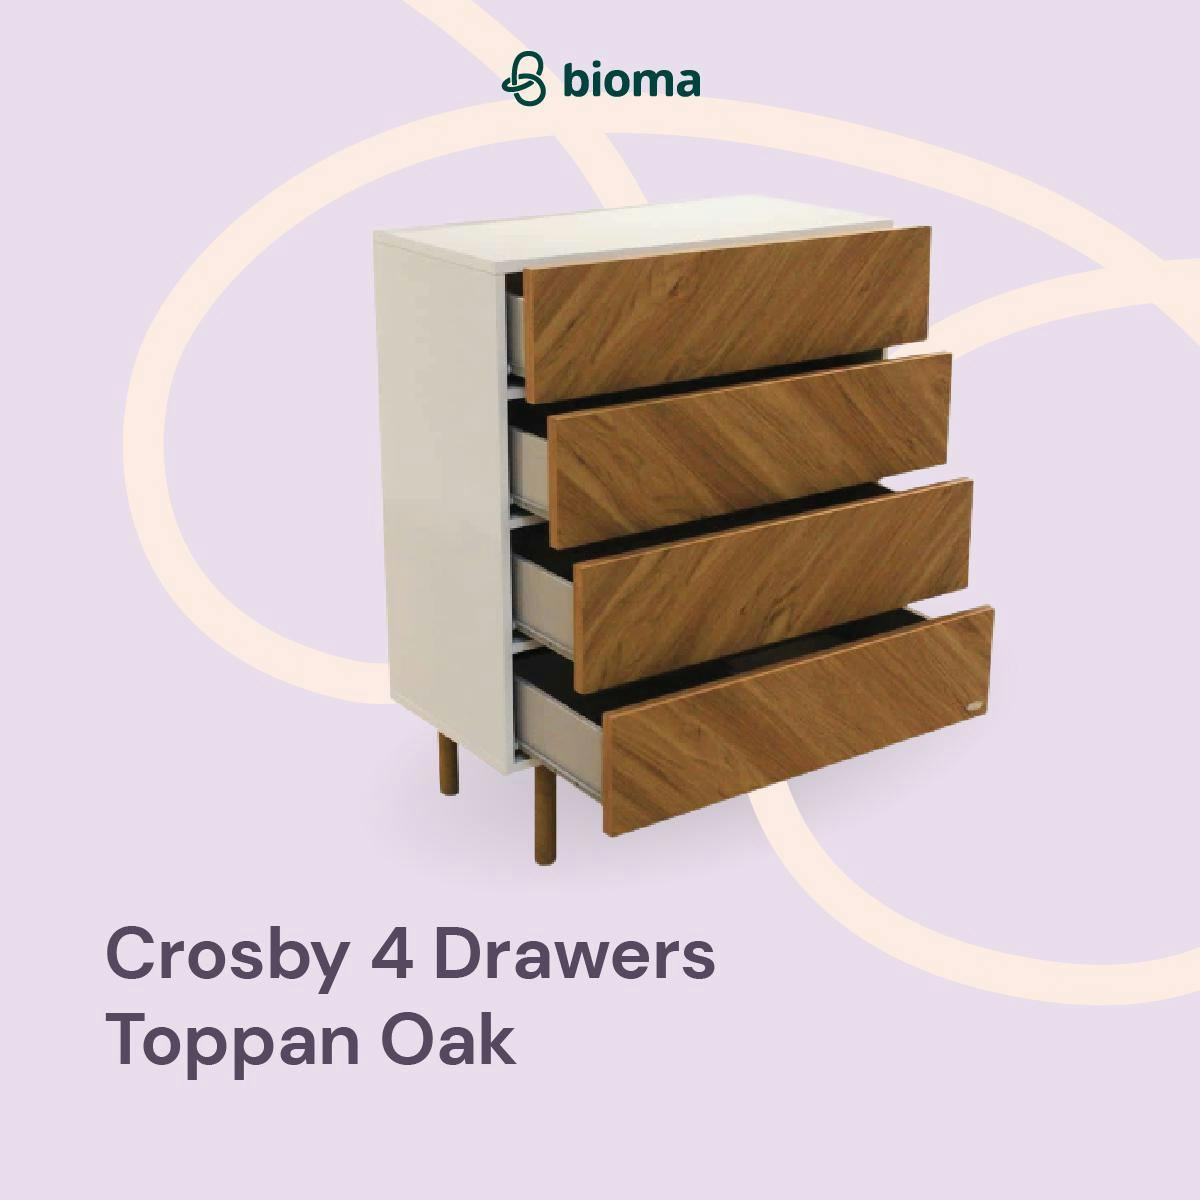 Crosby 4 Drawers Toppan Oak